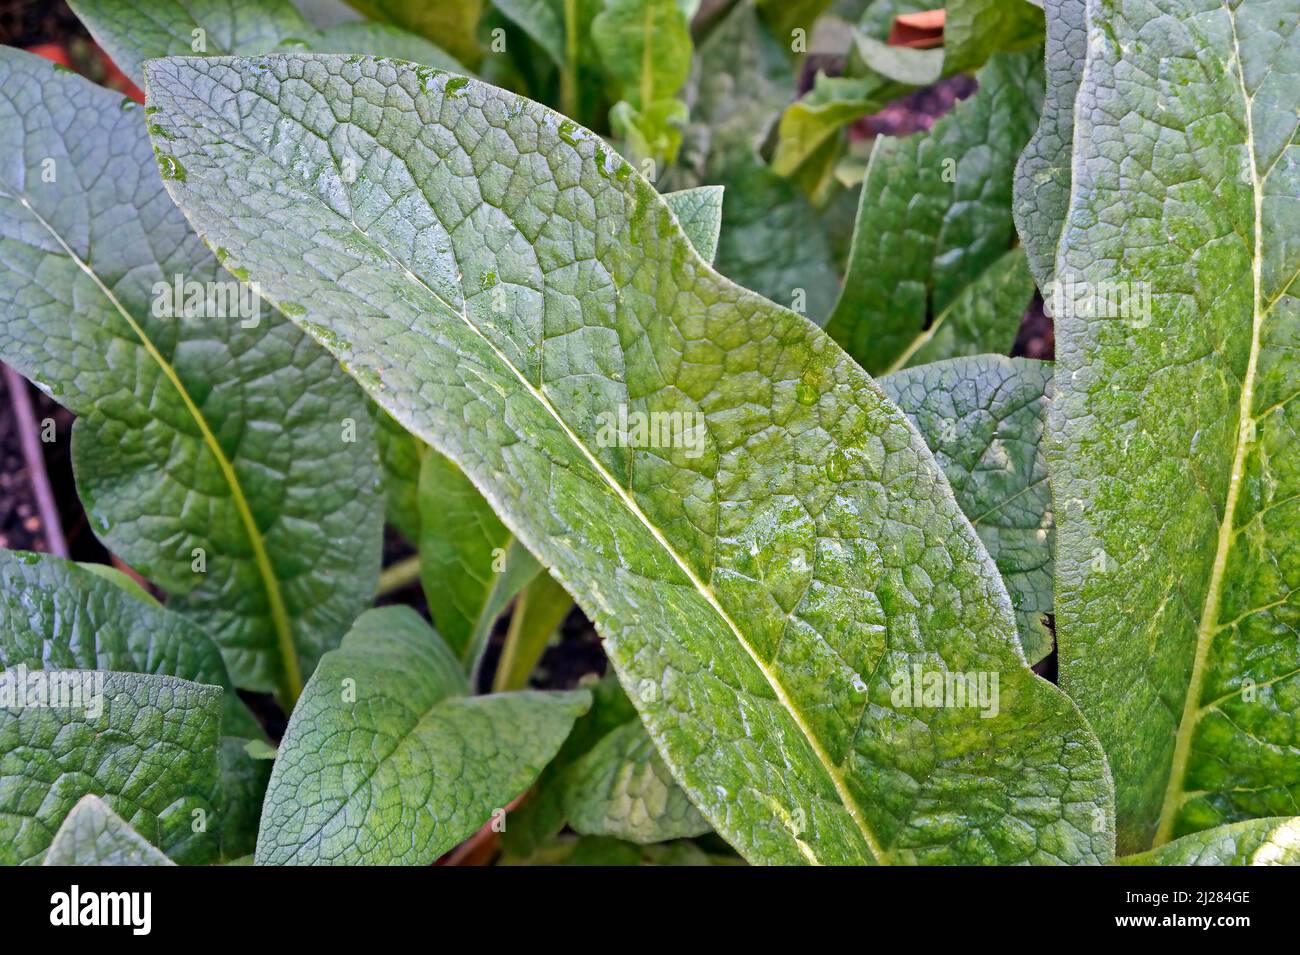 Tuberous comfrey leaf (Symphytum tuberosum) on garden Stock Photo